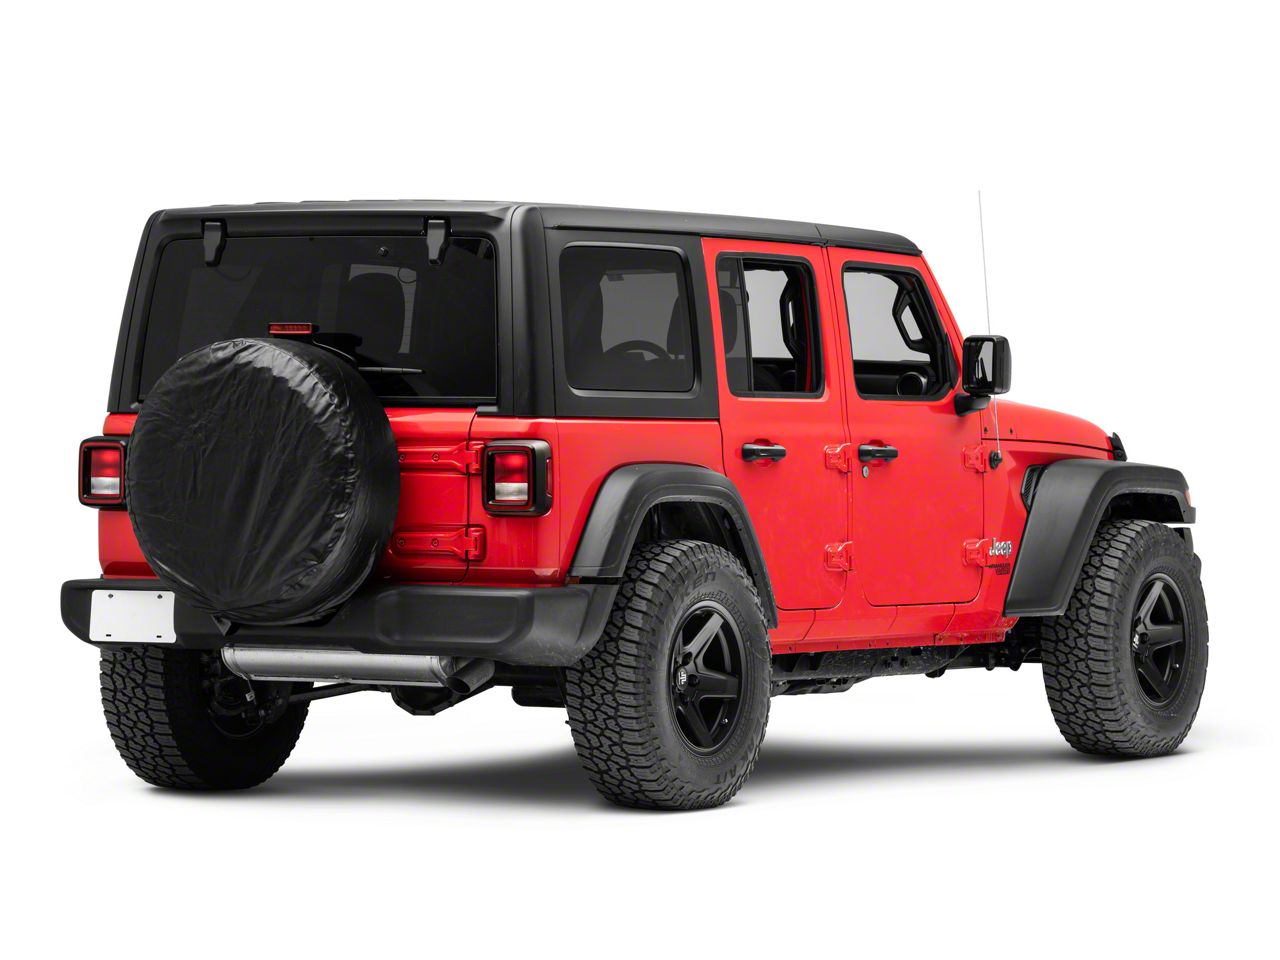 RedRock Jeep Wrangler 30 to 32-Inch Spare Tire Cover; Black J140394 (66-18  Jeep CJ5, CJ7, Wrangler YJ, TJ  JK) Free Shipping